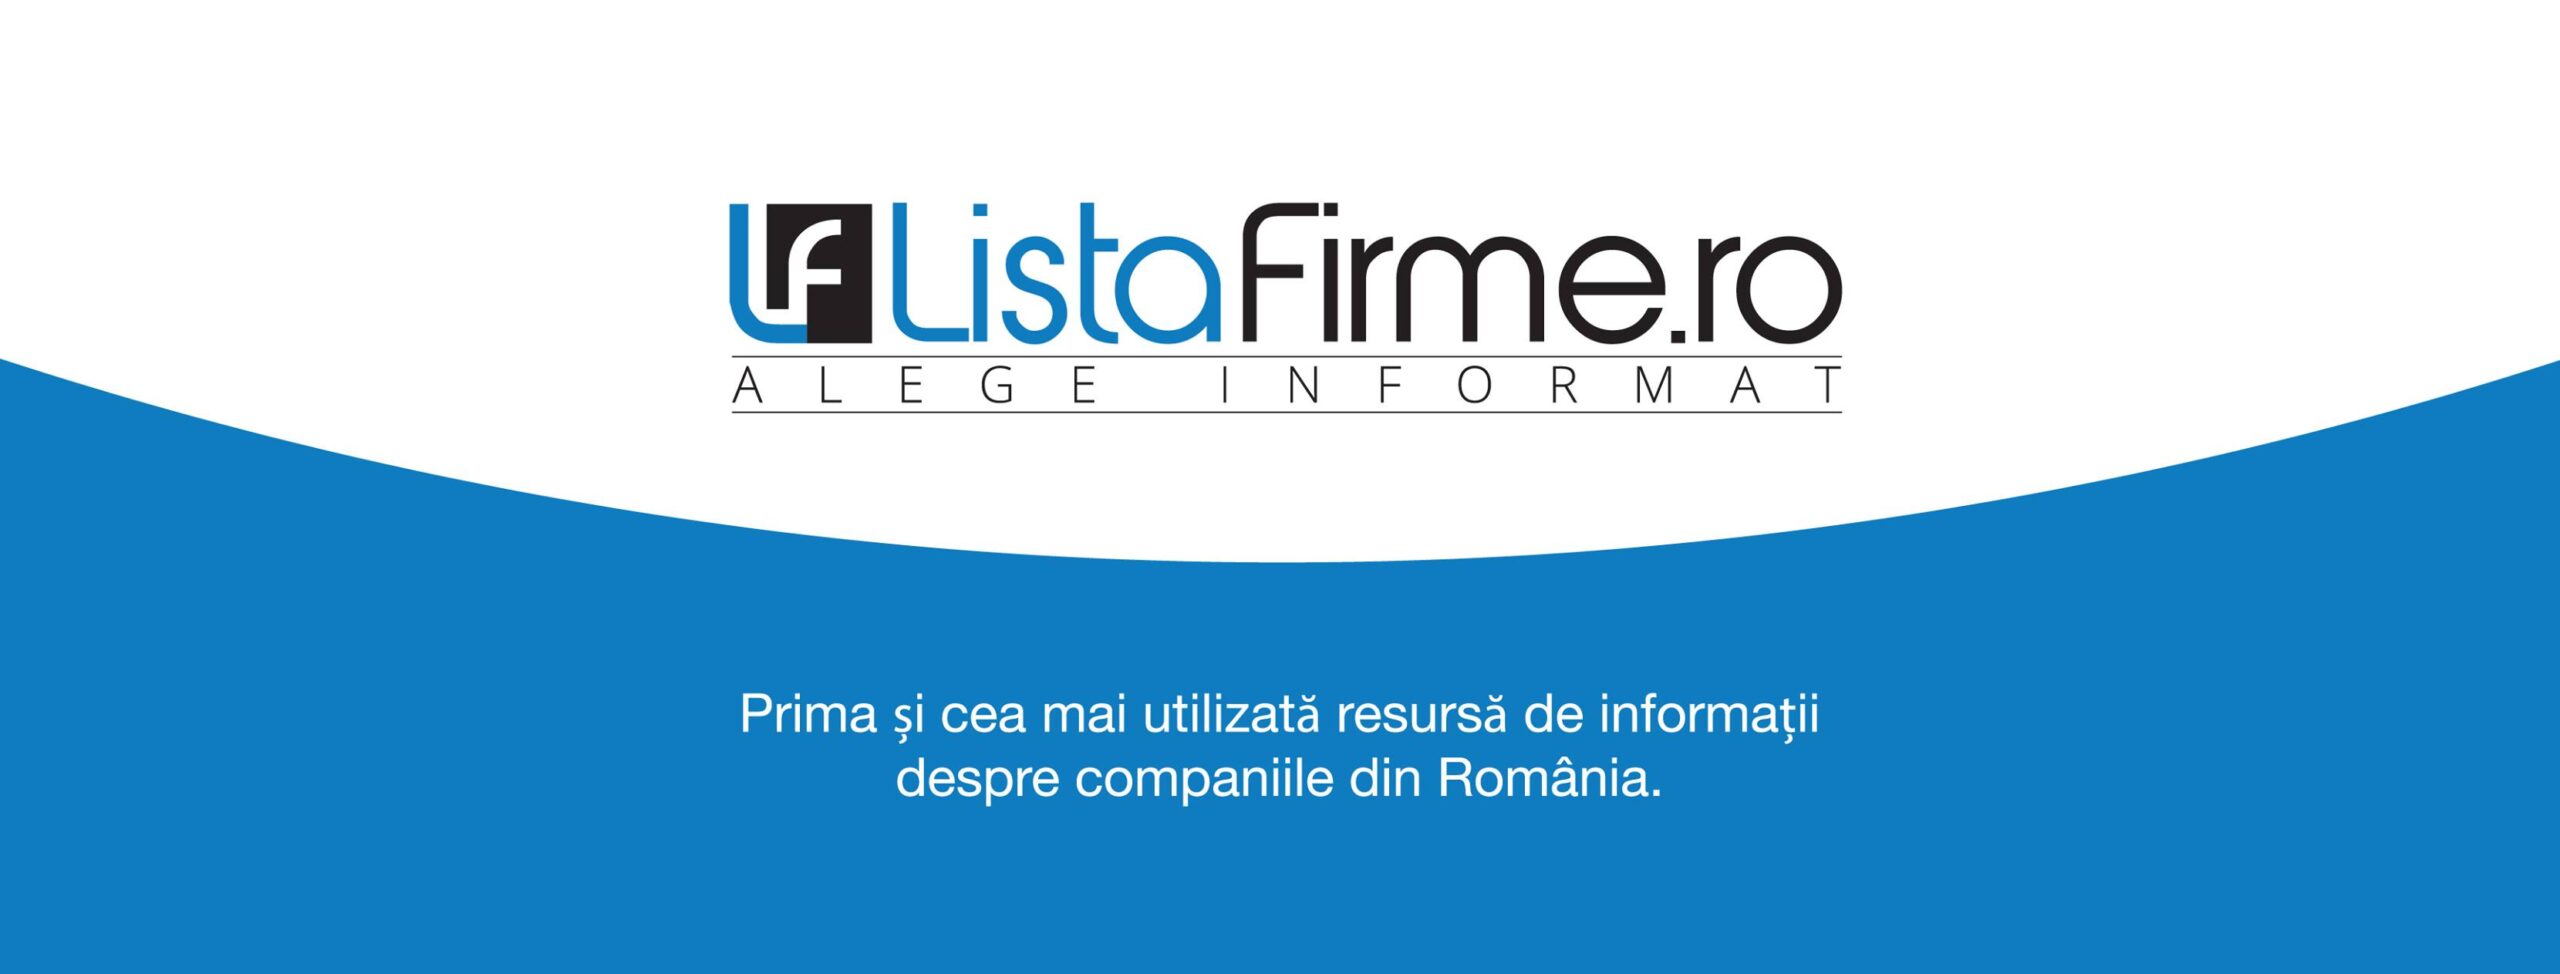 Listafirme.ro este o platforma online care oferă informații complete si actualizate despre companiile